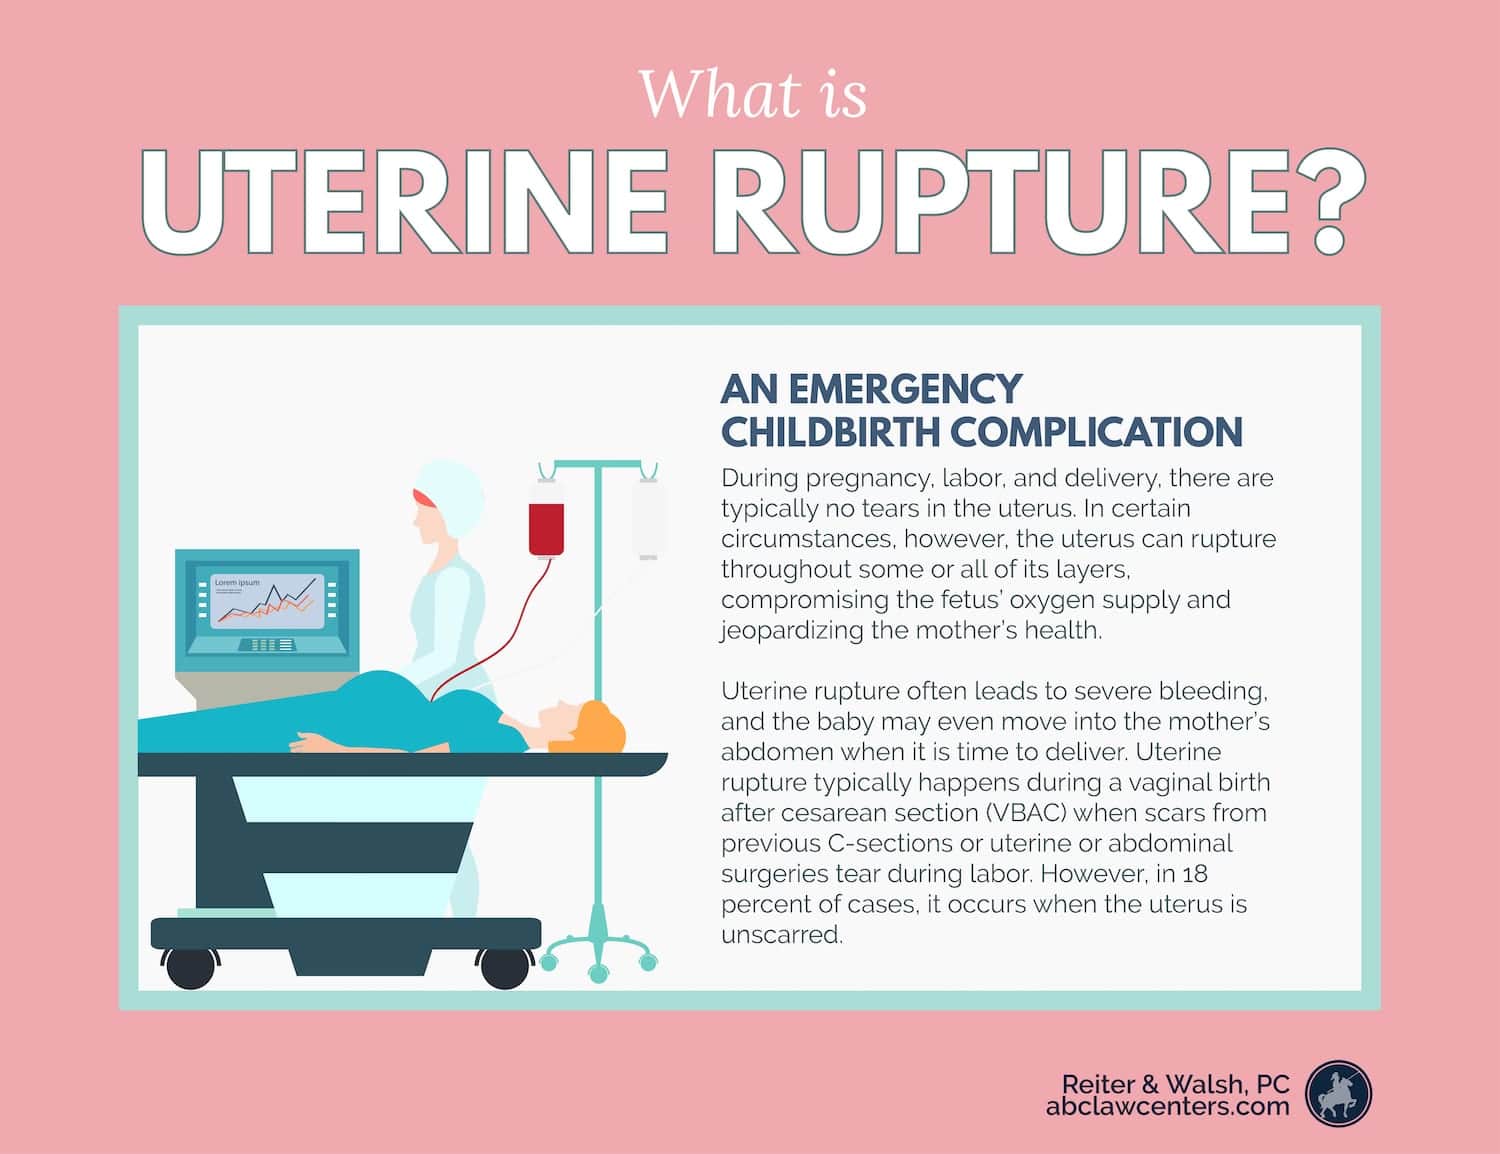 What is Uterine Rupture?